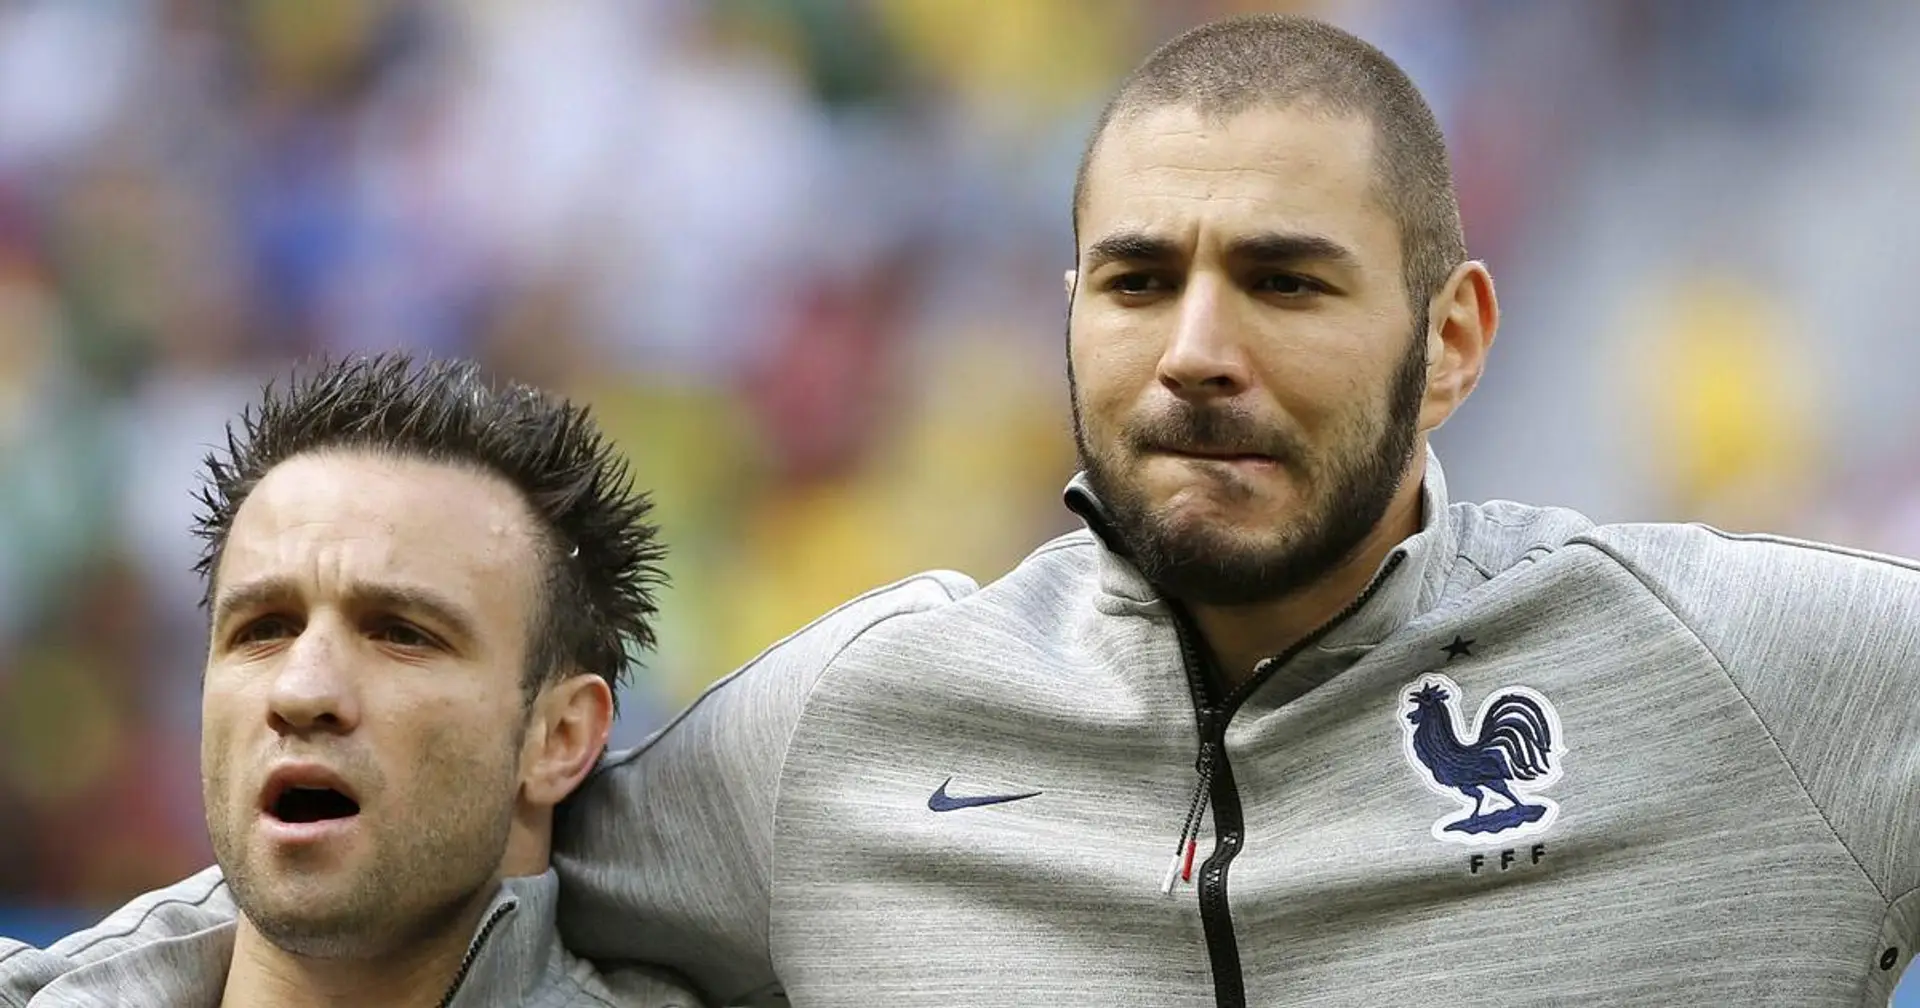 Confirmé: Karim Benzema sera jugé pour son implication présumée dans le scandale de chantage de Mathieu Valbuena